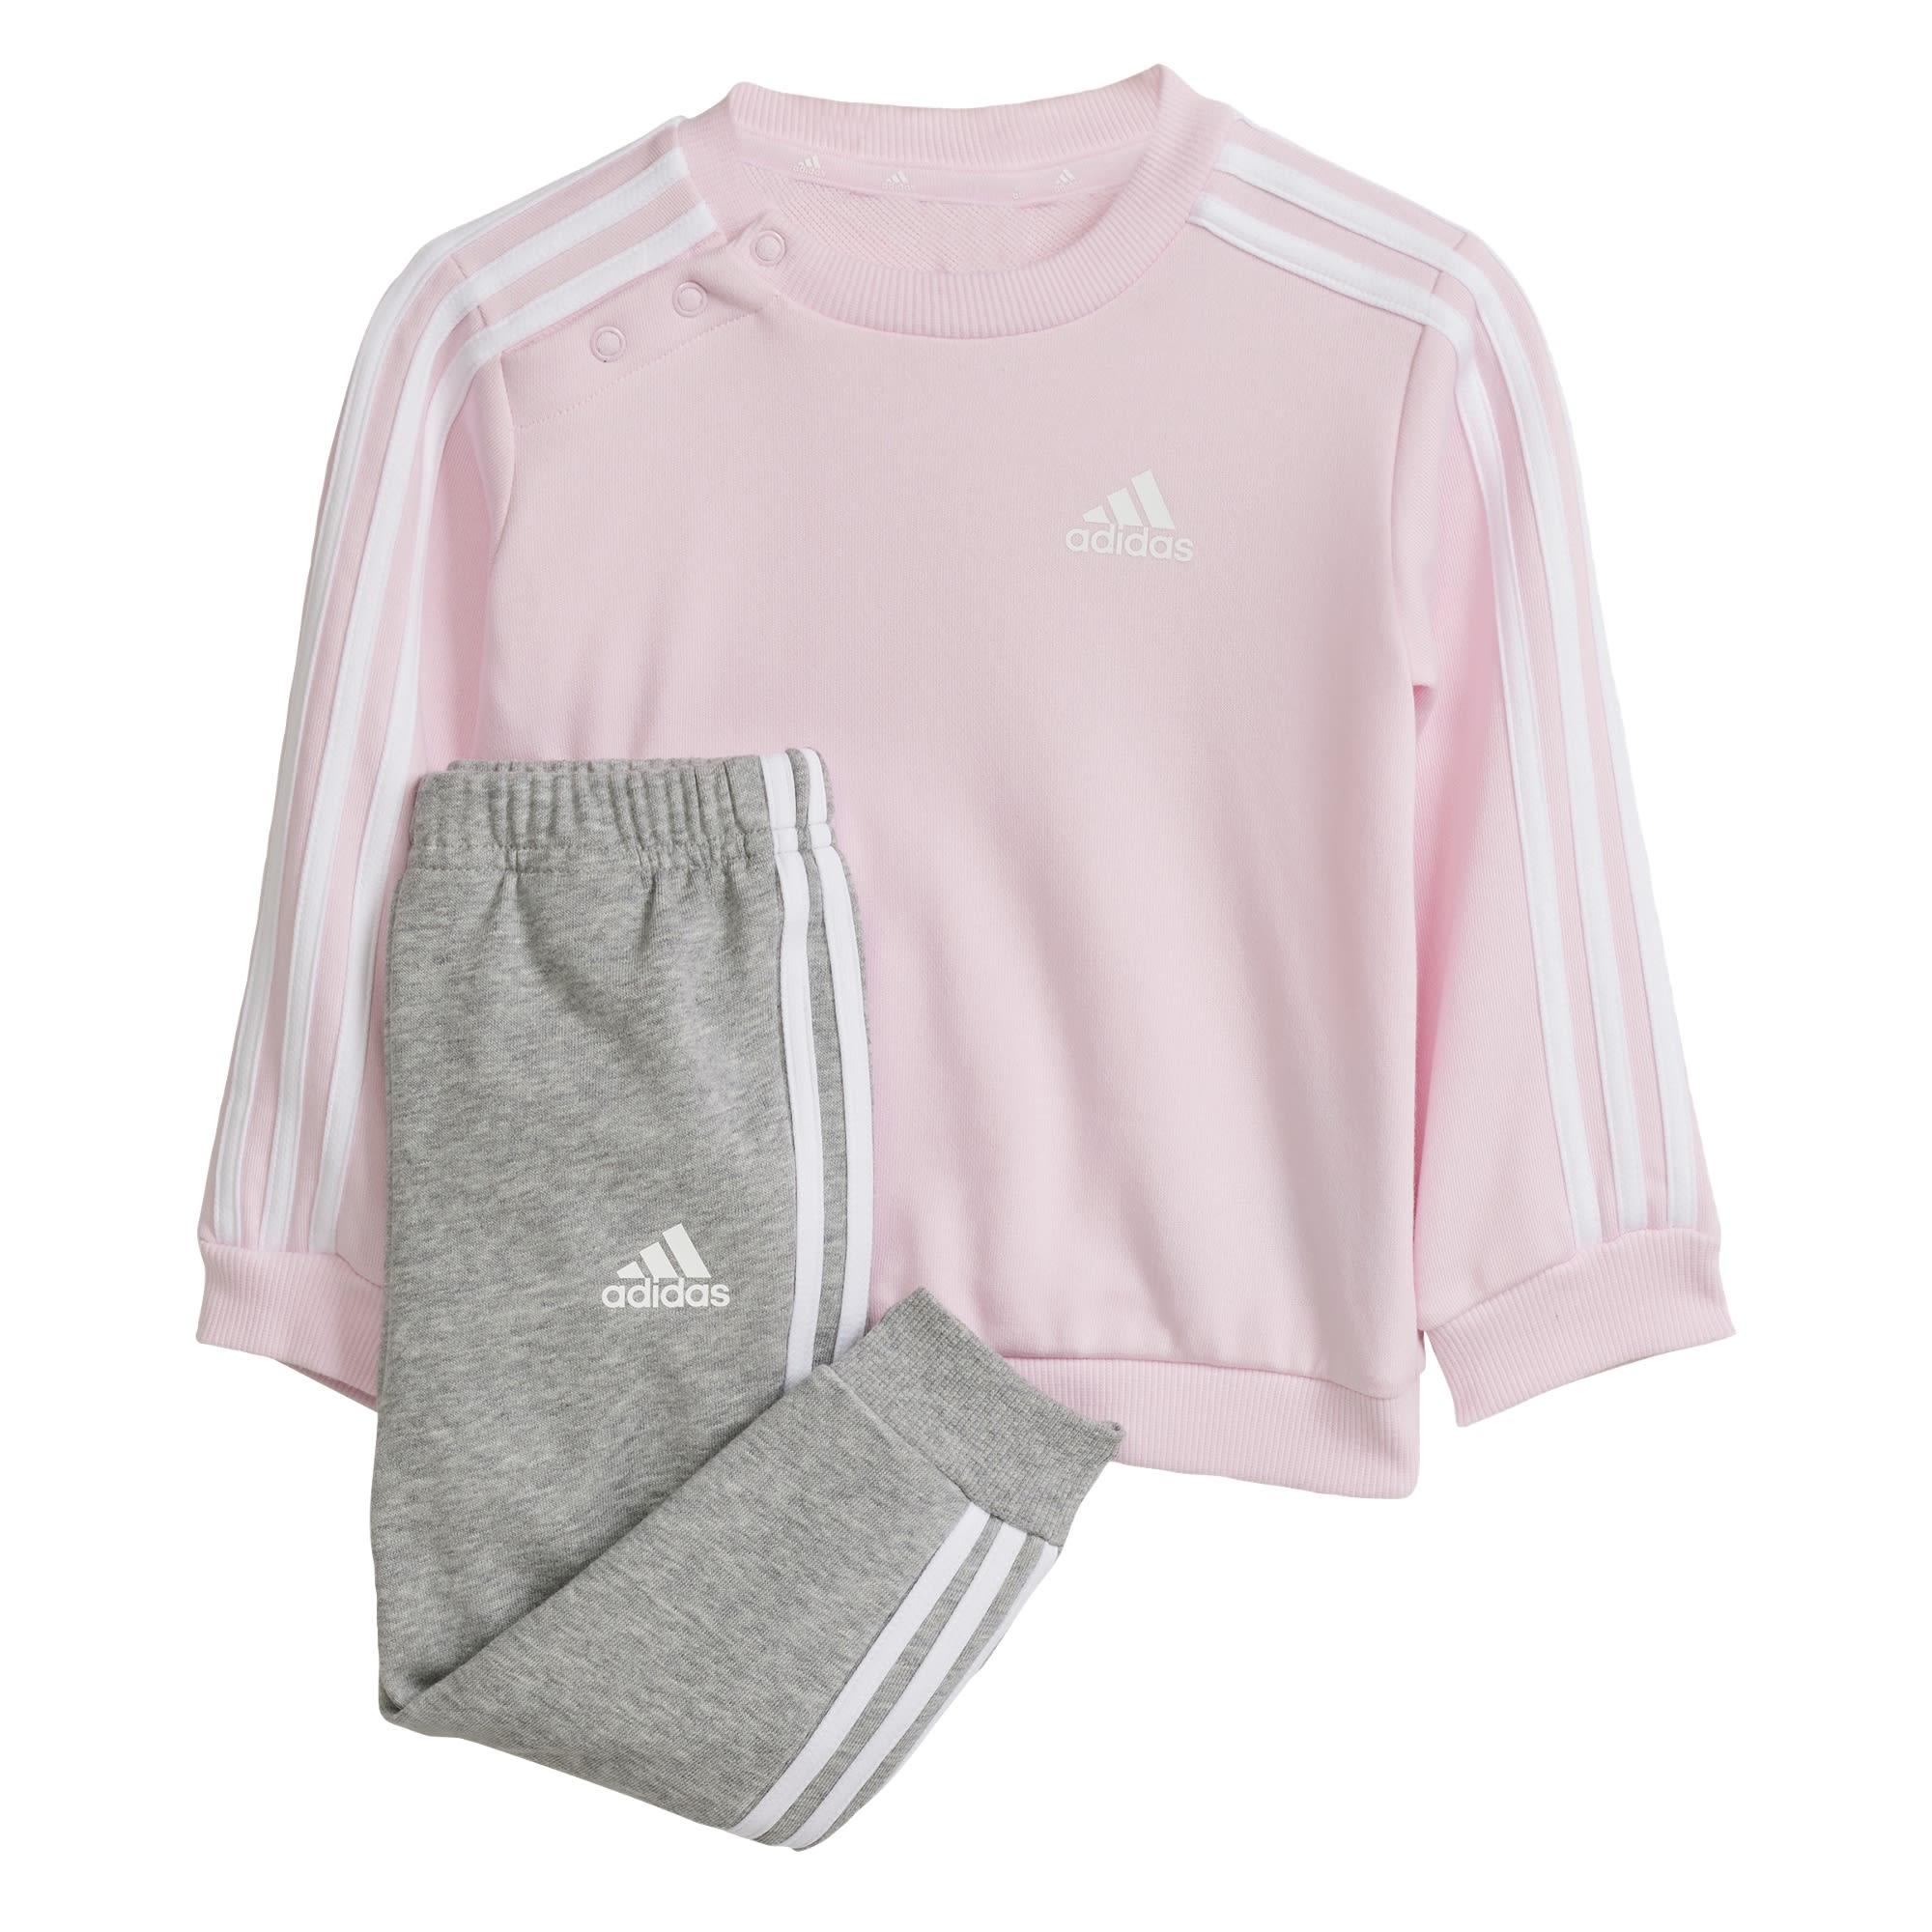 Adidas Essentials 3-Streifen Kids Jogginganzug Trainingsanzug Kinder Clear  Pink / White im Online Shop von SportScheck kaufen